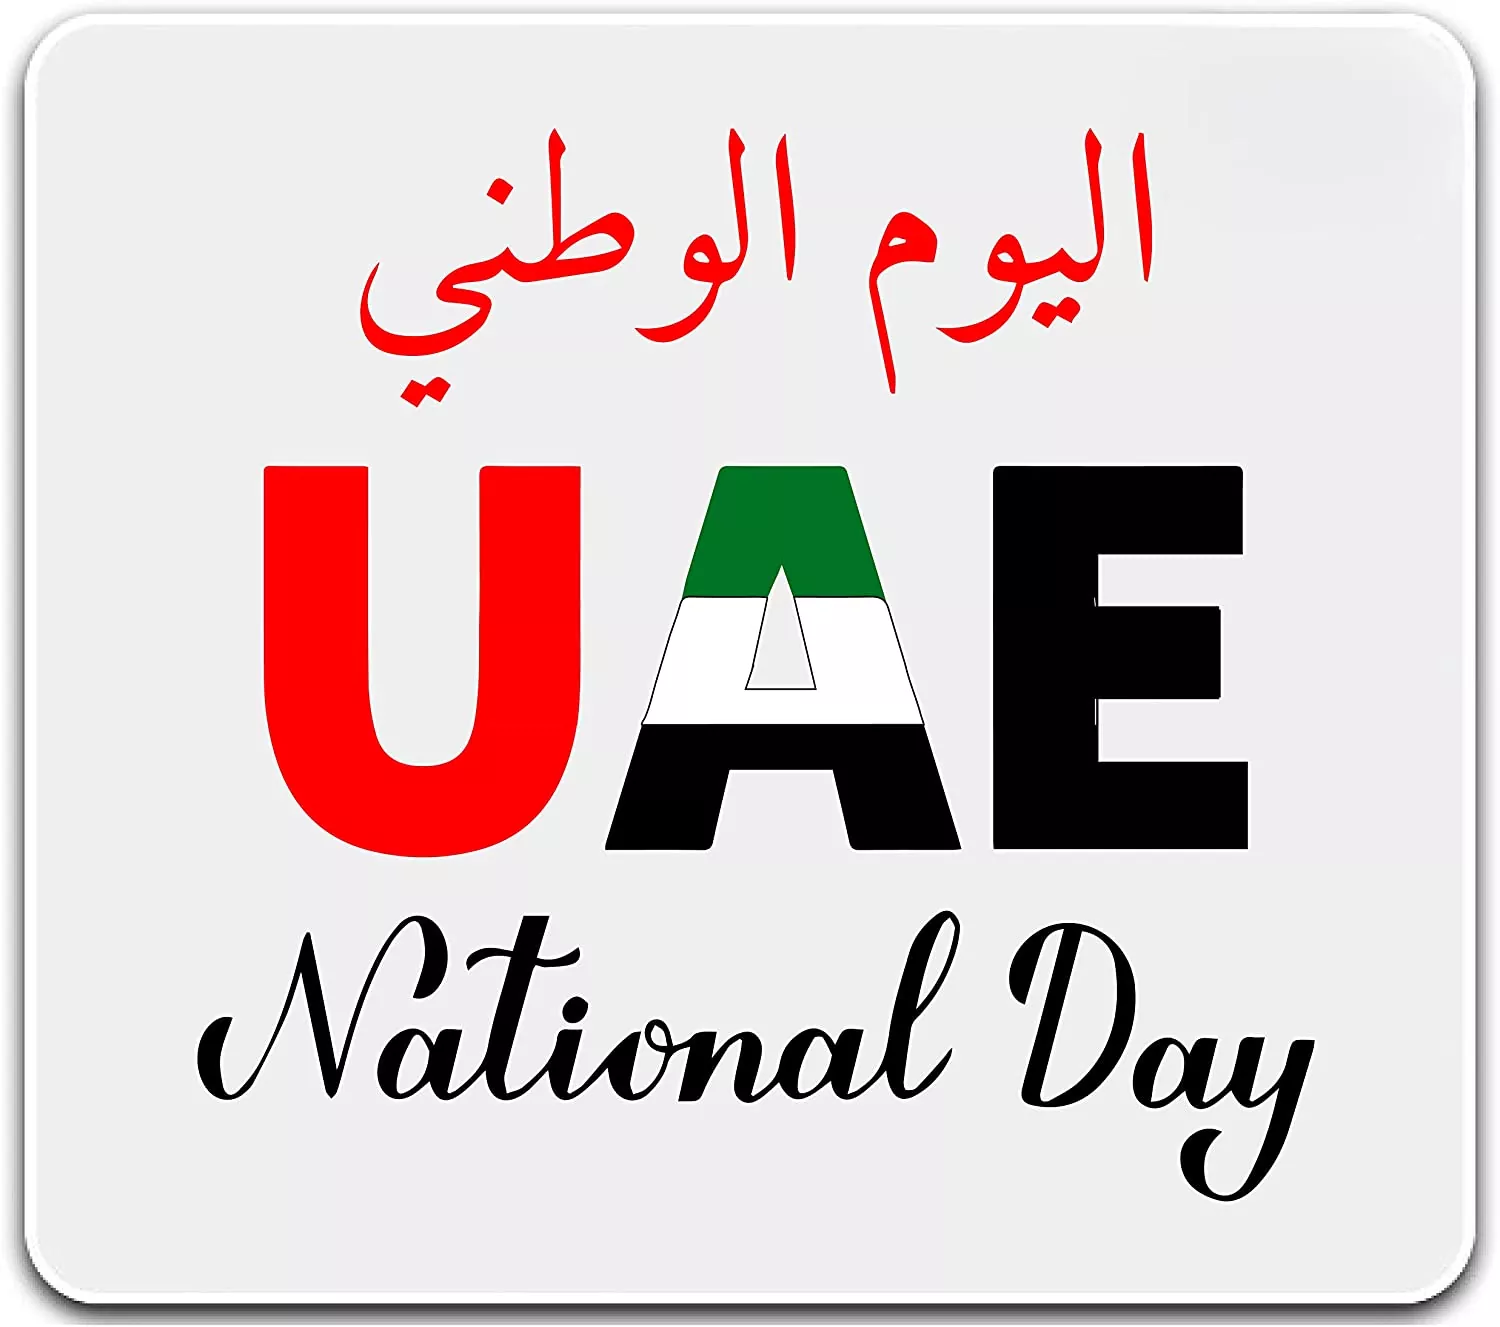 UAE National day mousepad